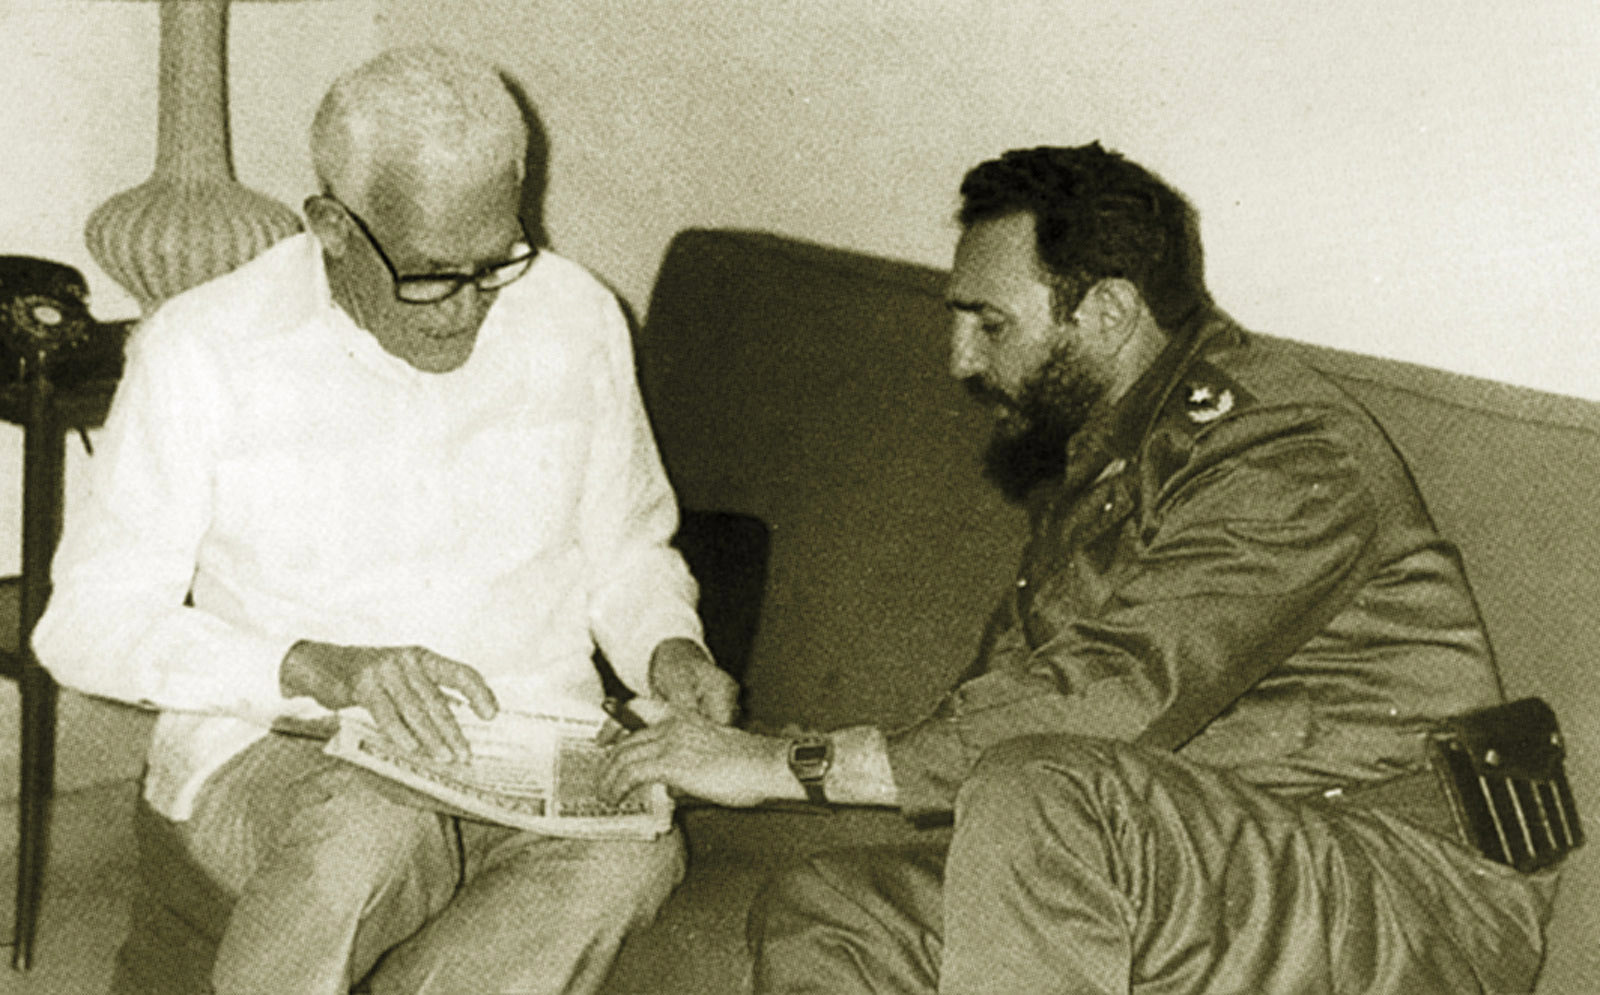 Former Dominican President Juan Bosch, left, speaks with Cuban President Fidel Castro in Havana, Cuba. (AP Photo)